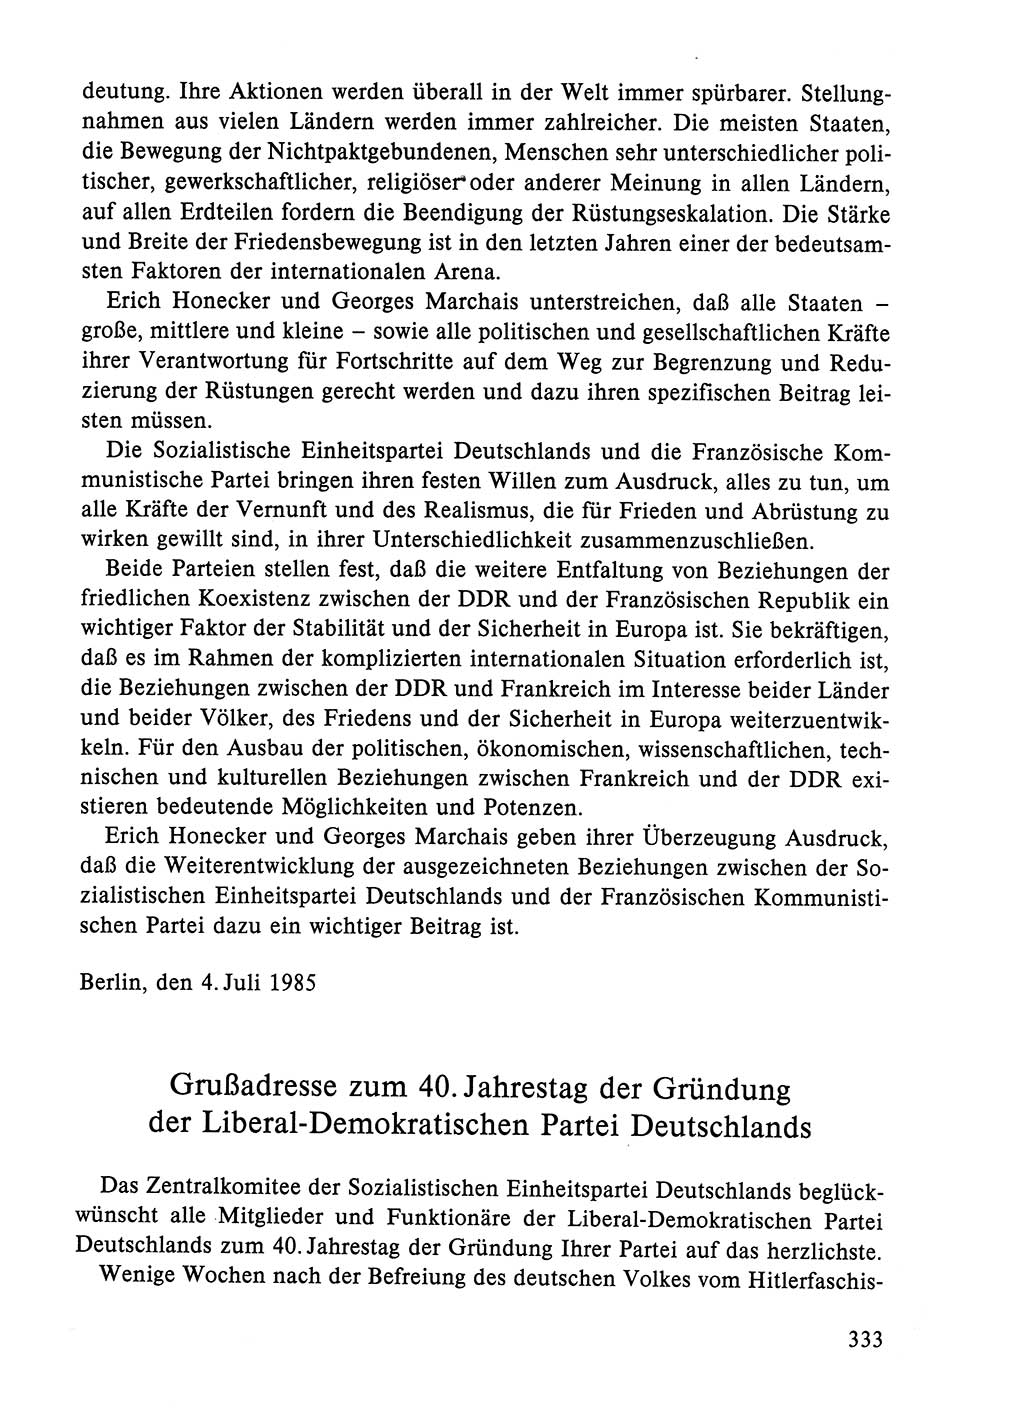 Dokumente der Sozialistischen Einheitspartei Deutschlands (SED) [Deutsche Demokratische Republik (DDR)] 1984-1985, Seite 333 (Dok. SED DDR 1984-1985, S. 333)